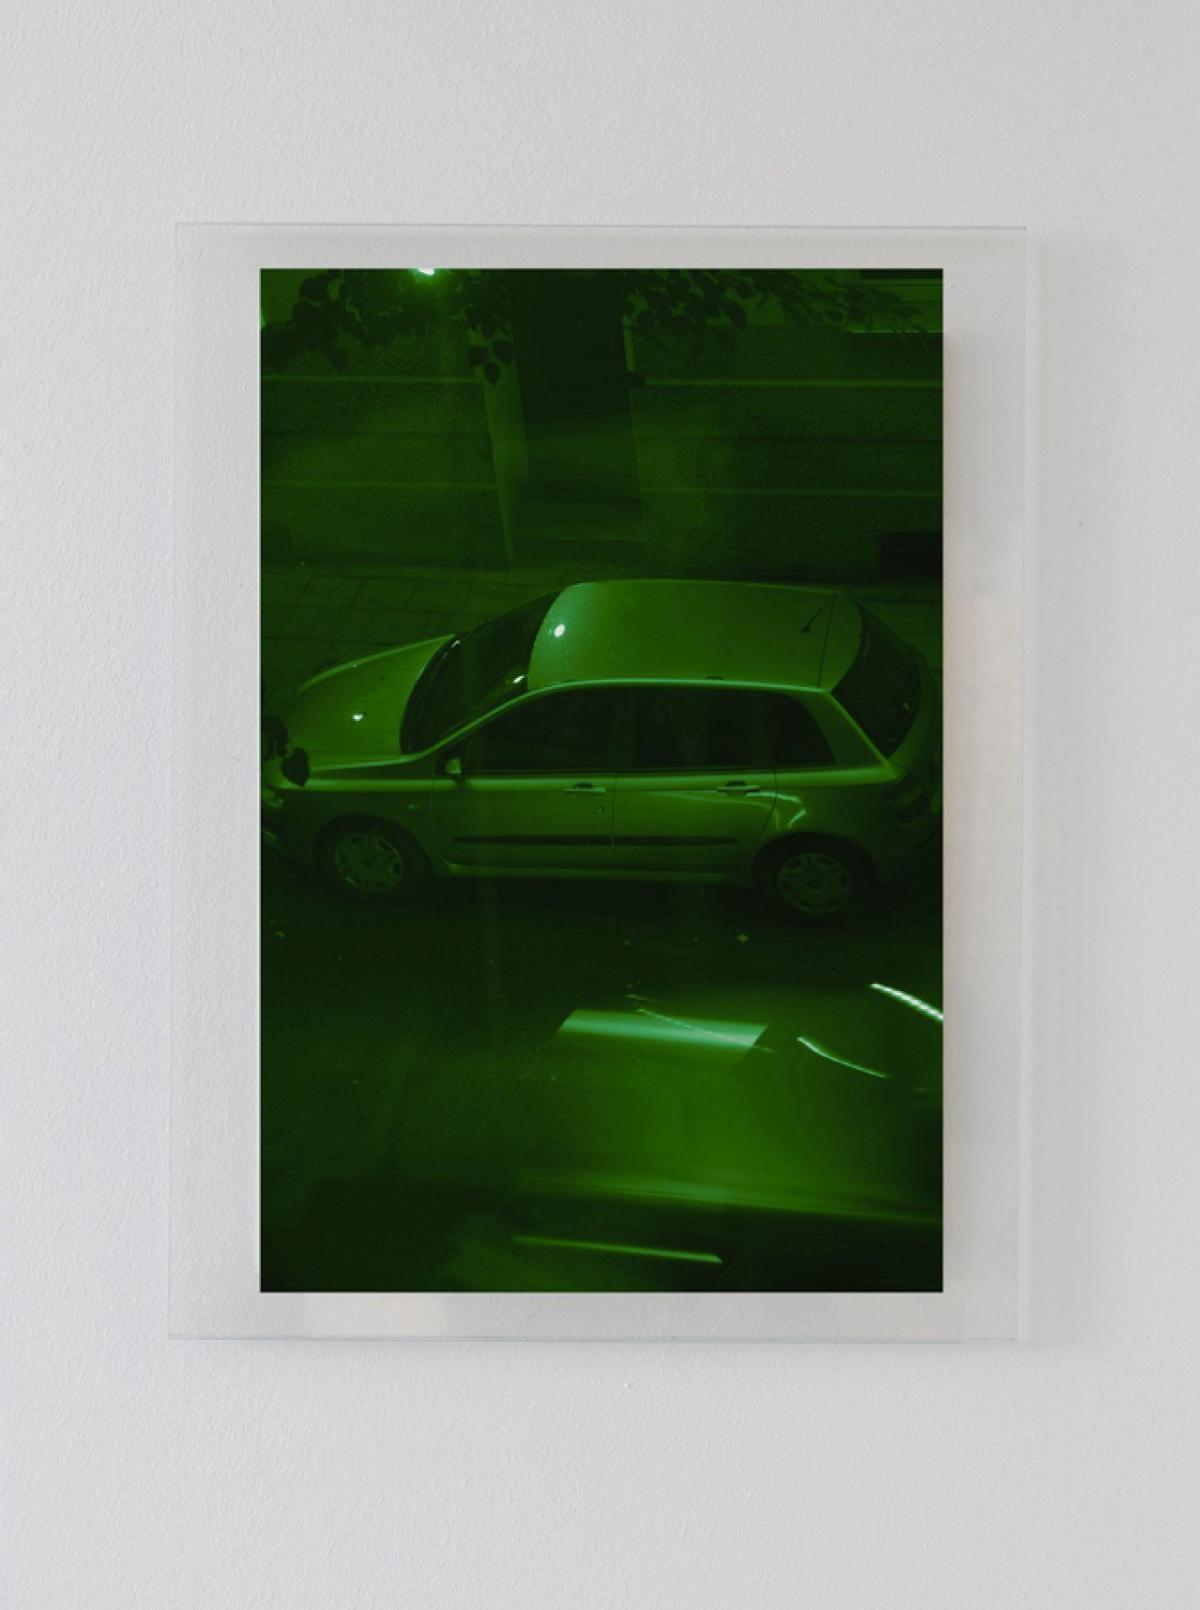 Photo de voiture prise depuis une fenêtre. L'image est teintée d'une couleur verte.